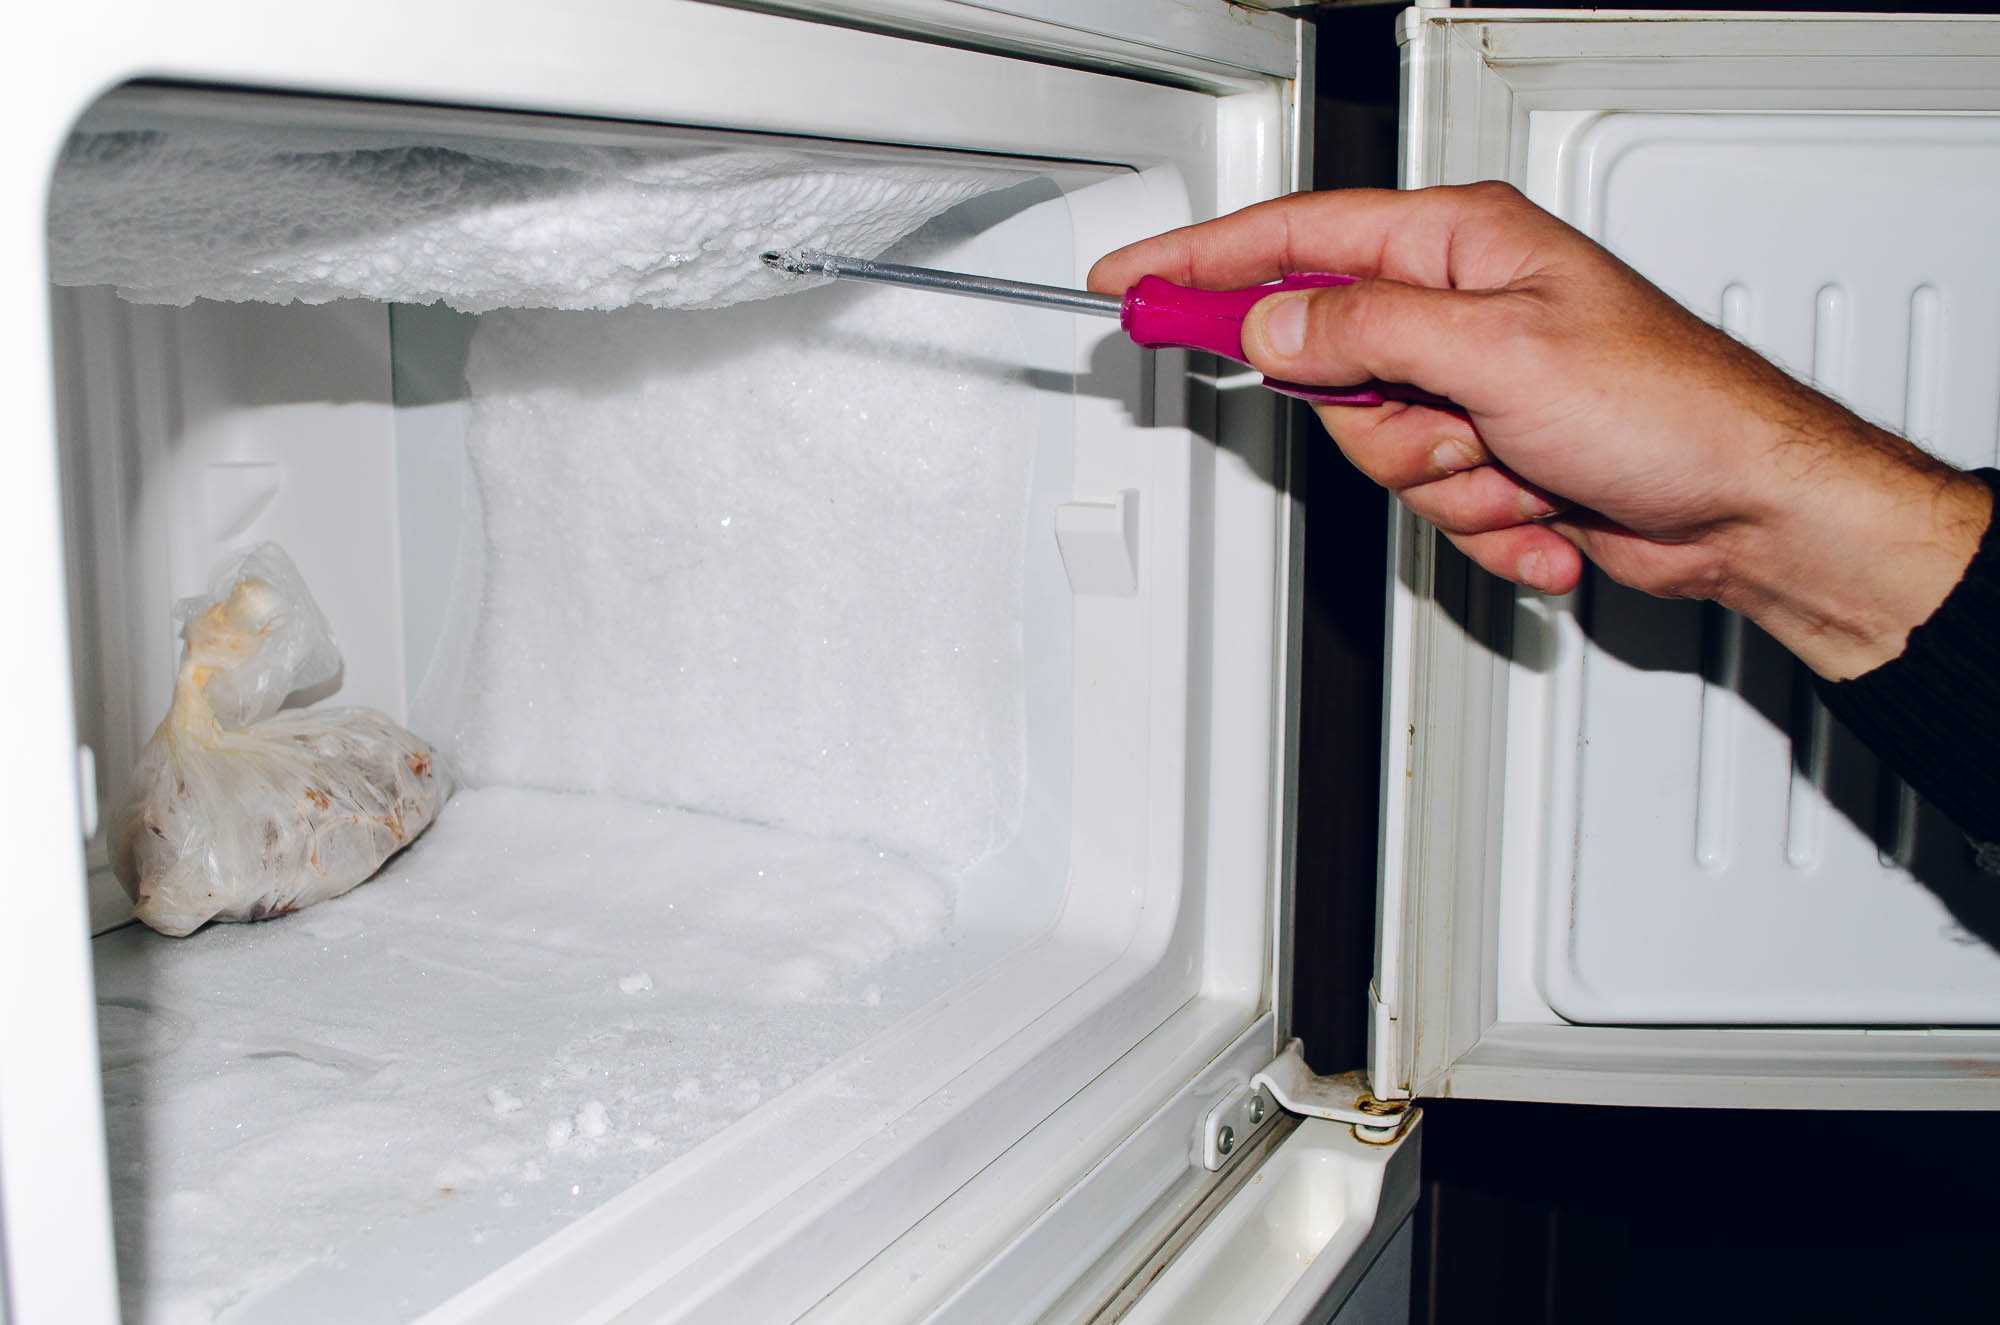 Скопление воды в холодильнике может появляться вследствие засорения дренажной системы, а если поврежден нагреватель испарителя, то также может намерзать лед